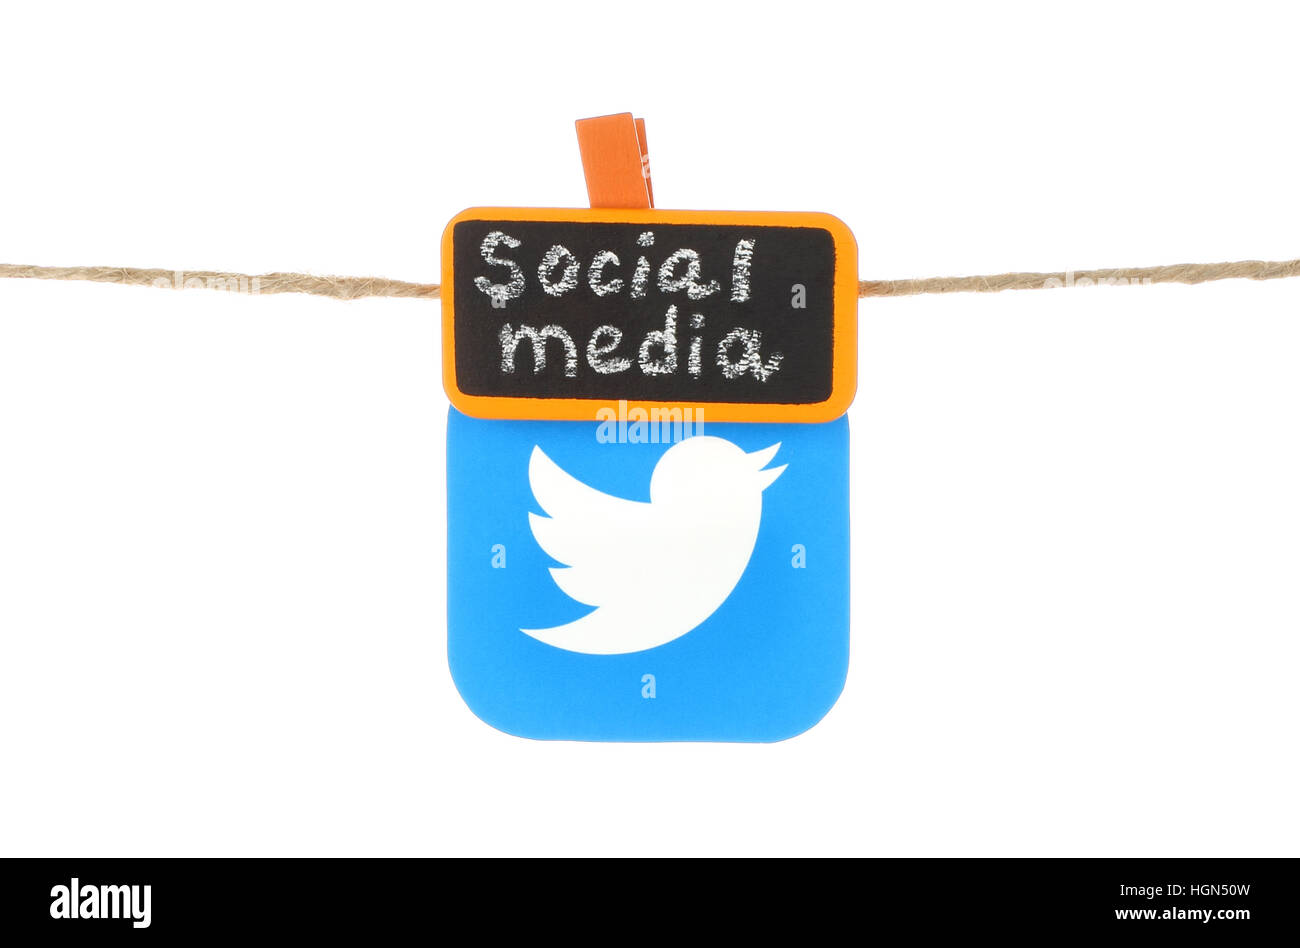 Kiev, Ukraine - 02 août 2016 : l'icône Twitter imprimés sur du papier, hangind sur une corde avec orange tag clothespin mots écrits à la craie "Social Media" o Banque D'Images